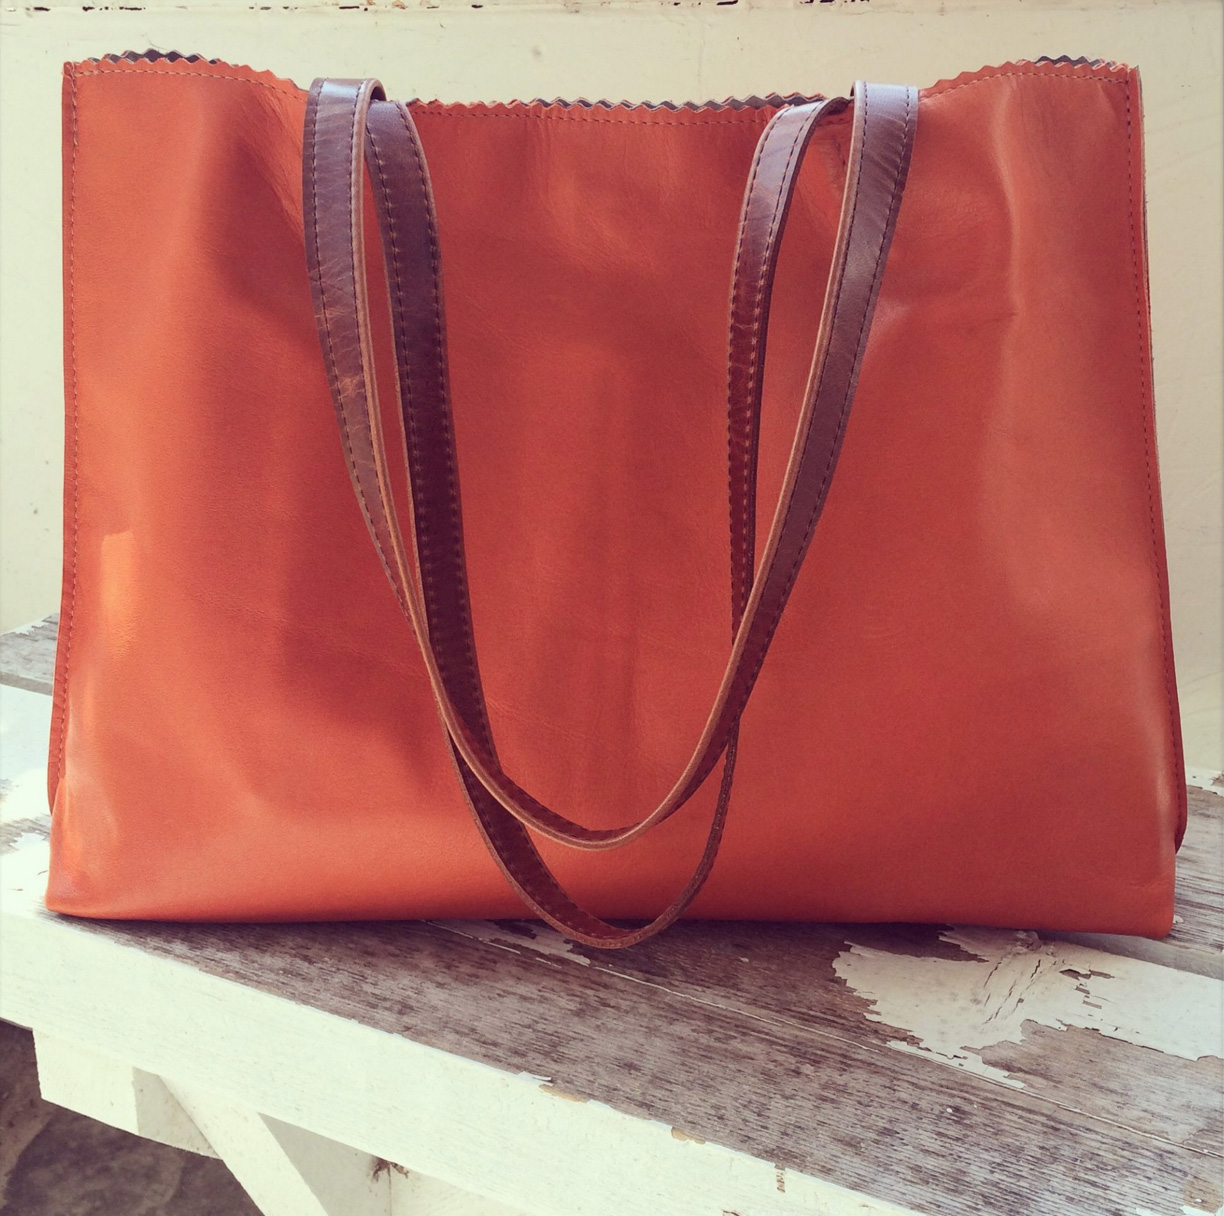 Elegant Leather Handbags By My Niece Robin Fogg